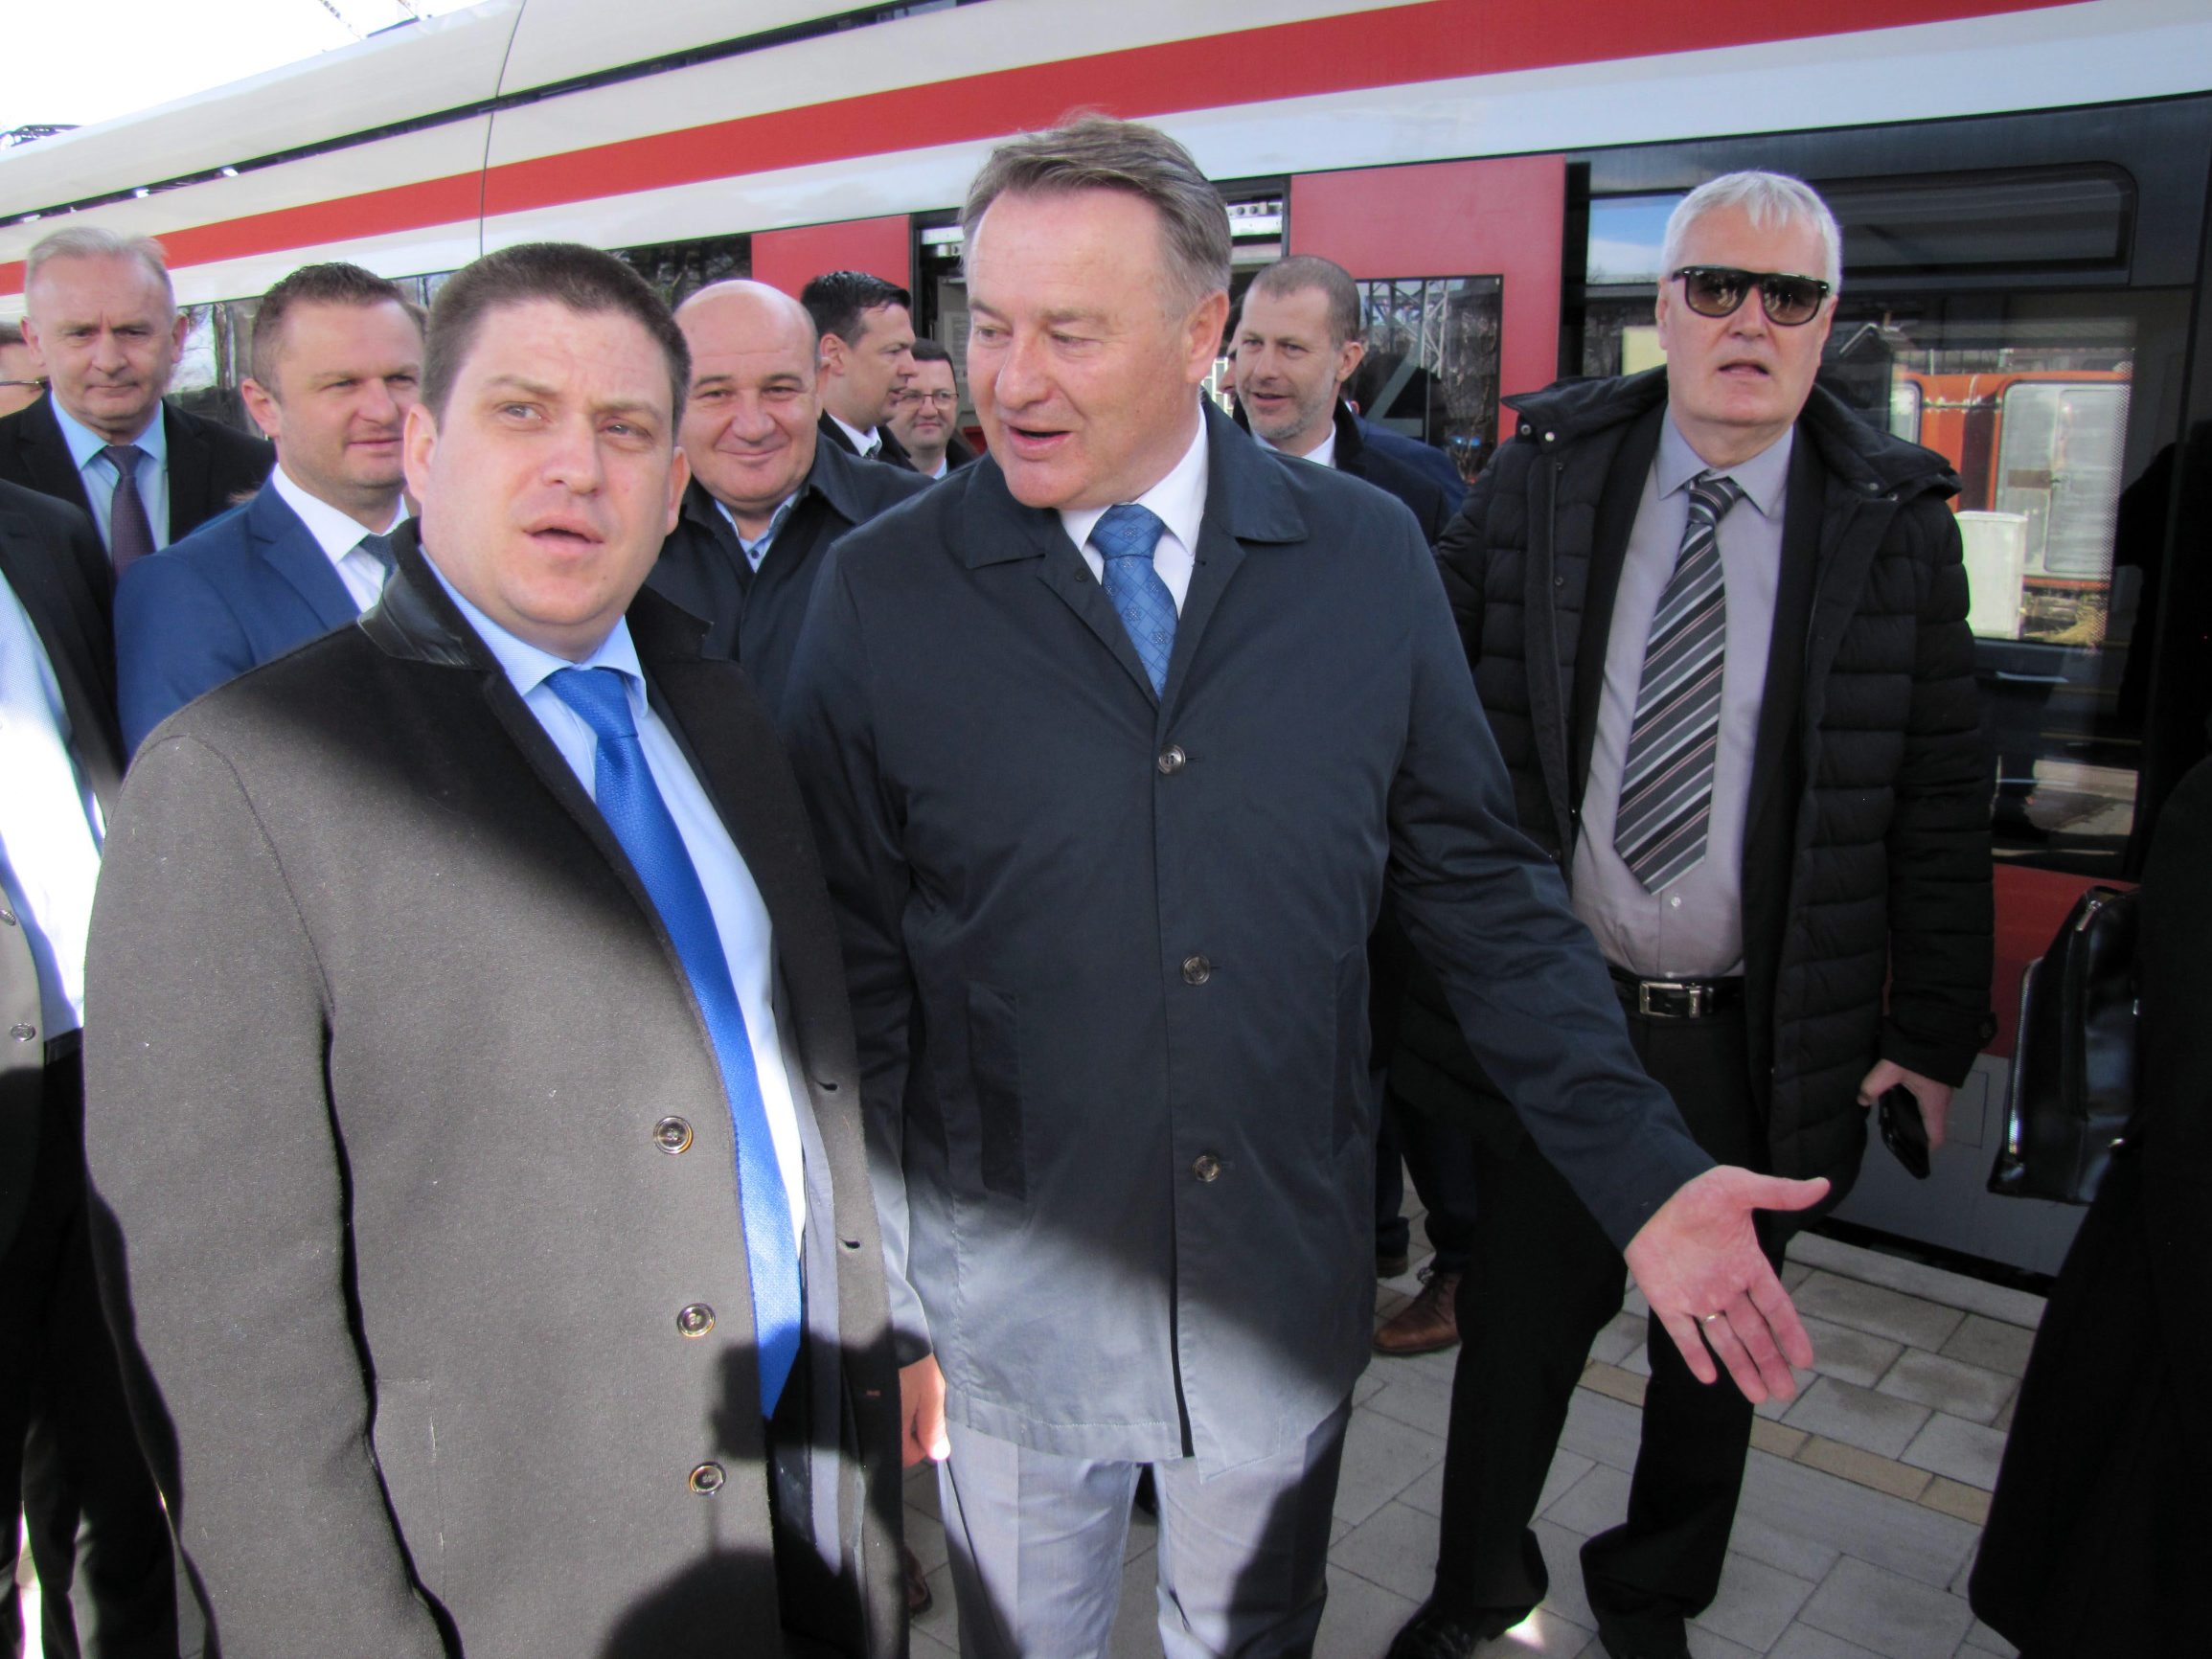 Sisak 020320. 
Ministar Butkovic posjetio jeSisak gdje je sa zupanom Ivom Zinicem razgovarao o radovima na prometnoj infrastrukturi.
Snimio: Mate Piskor / CROPIX                                                   